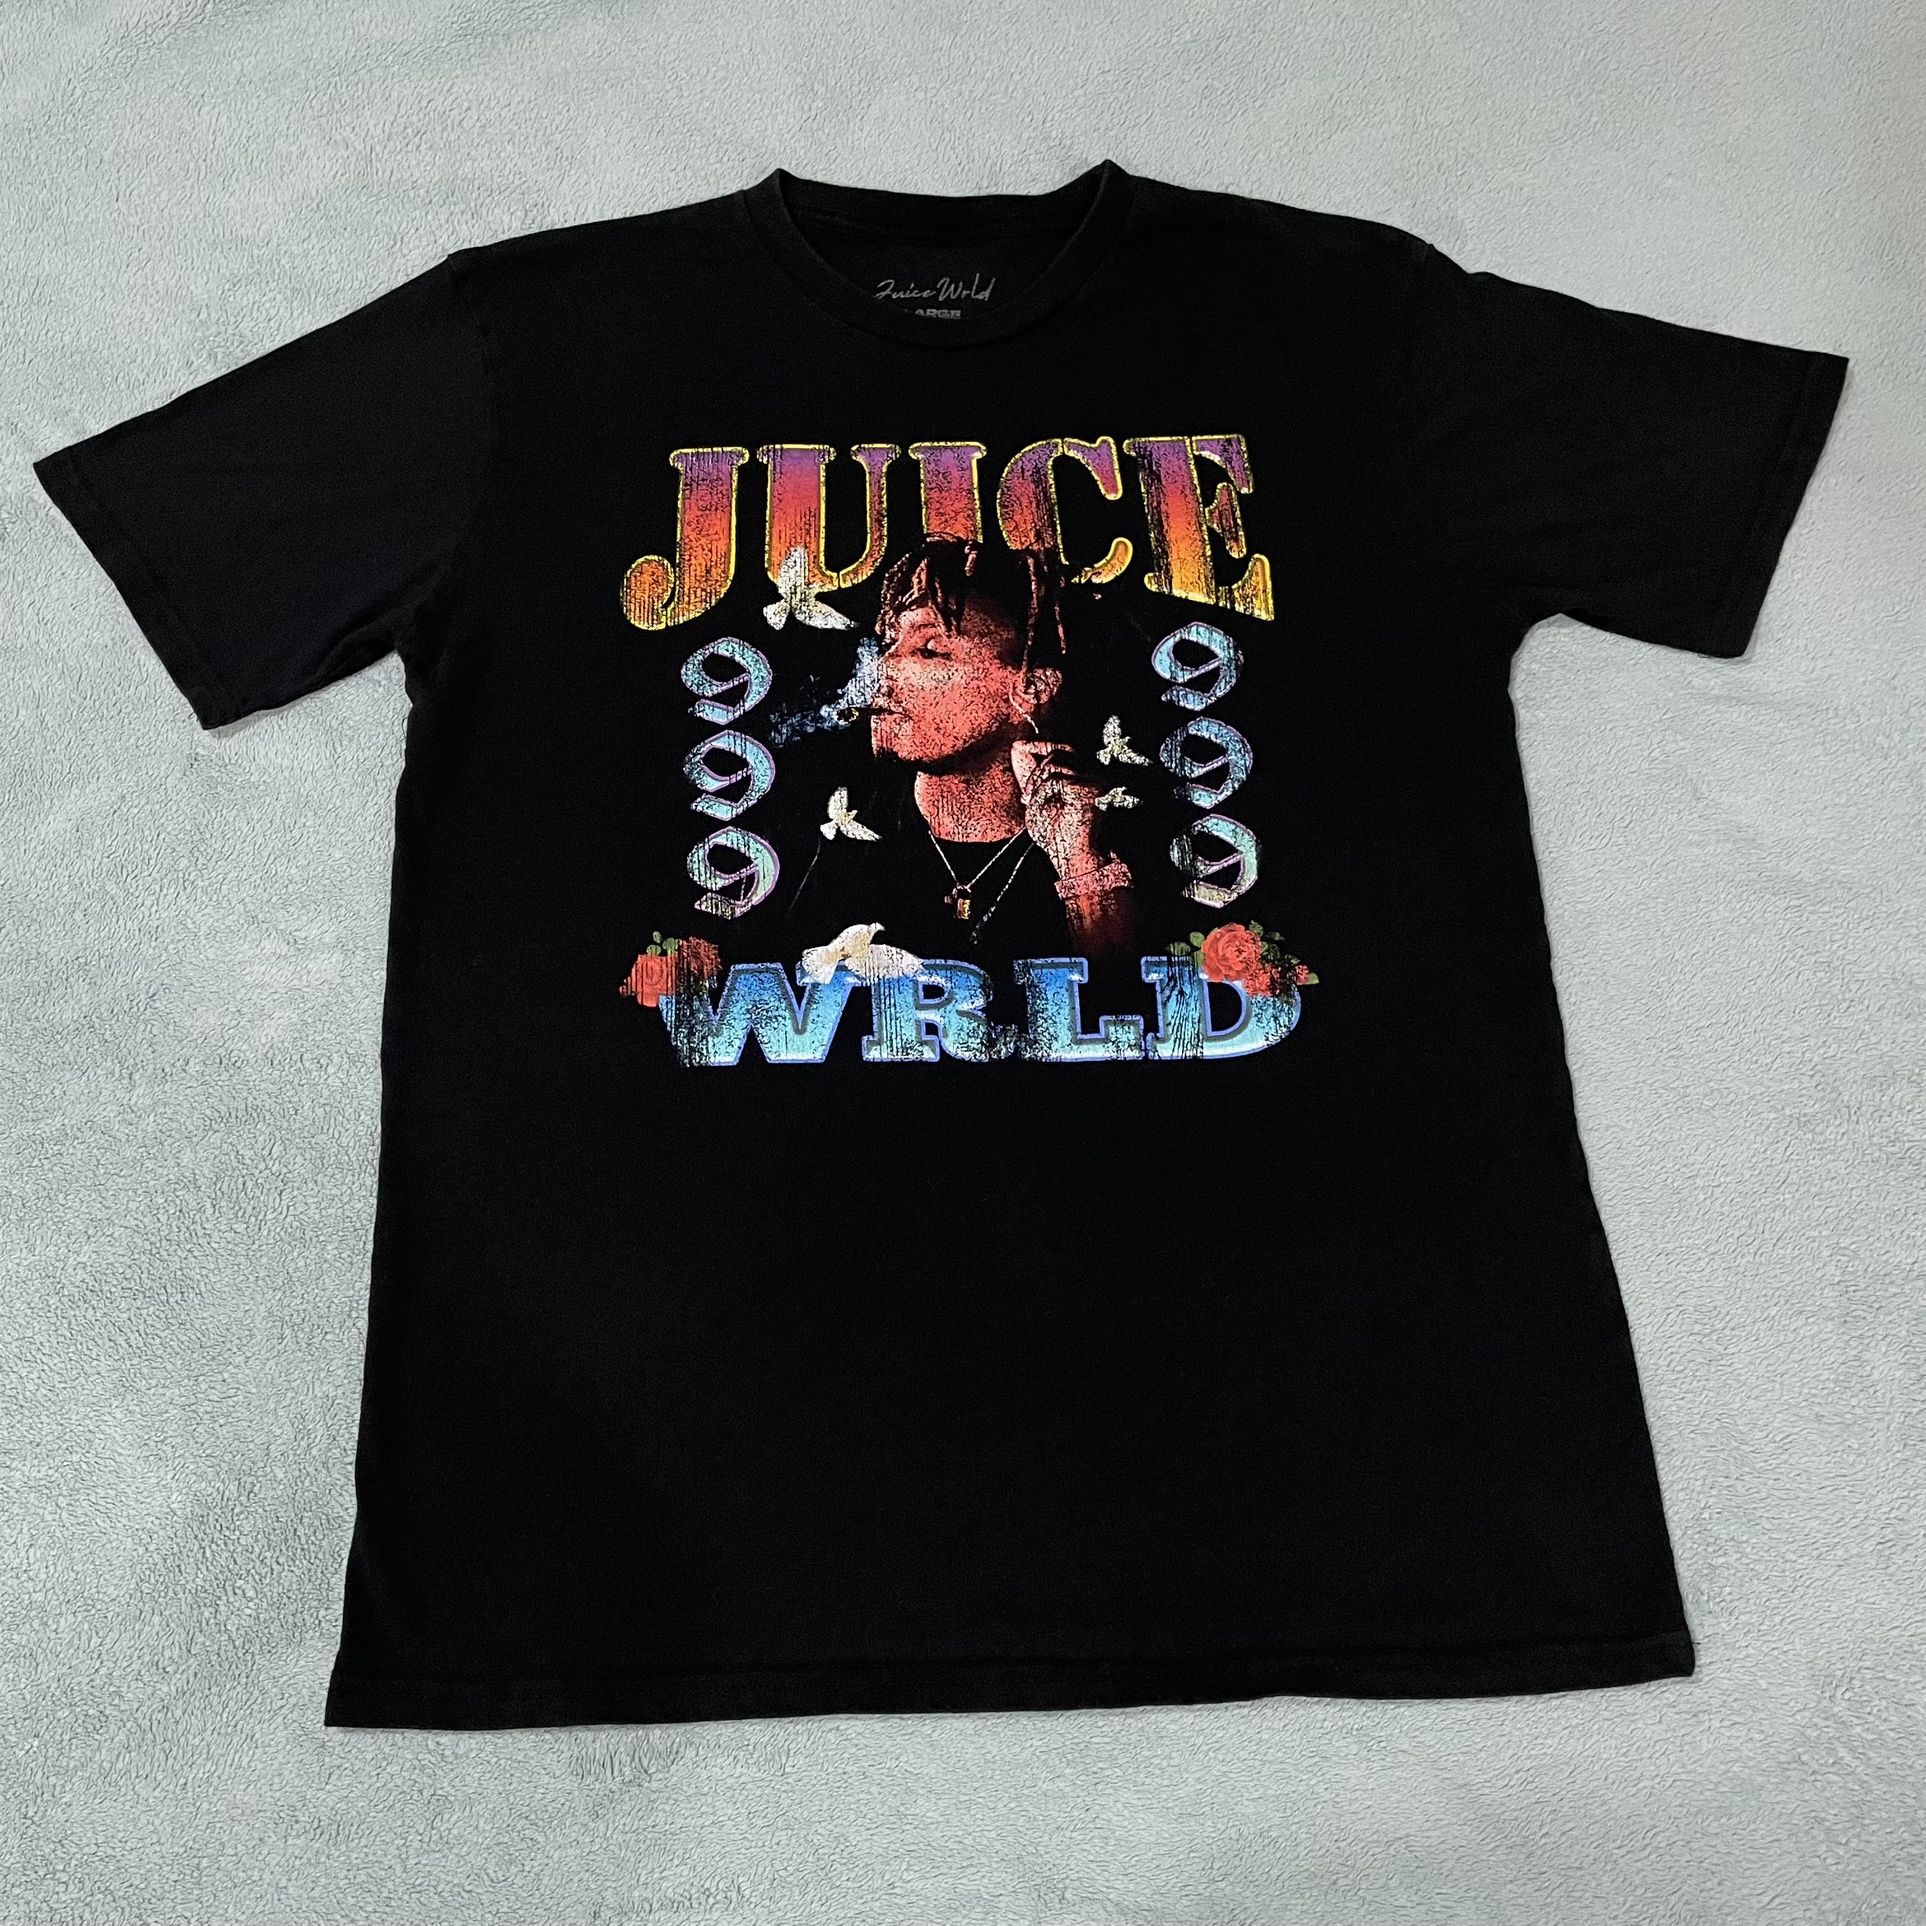 Juice Wrld T Shirt 999 Size Large 